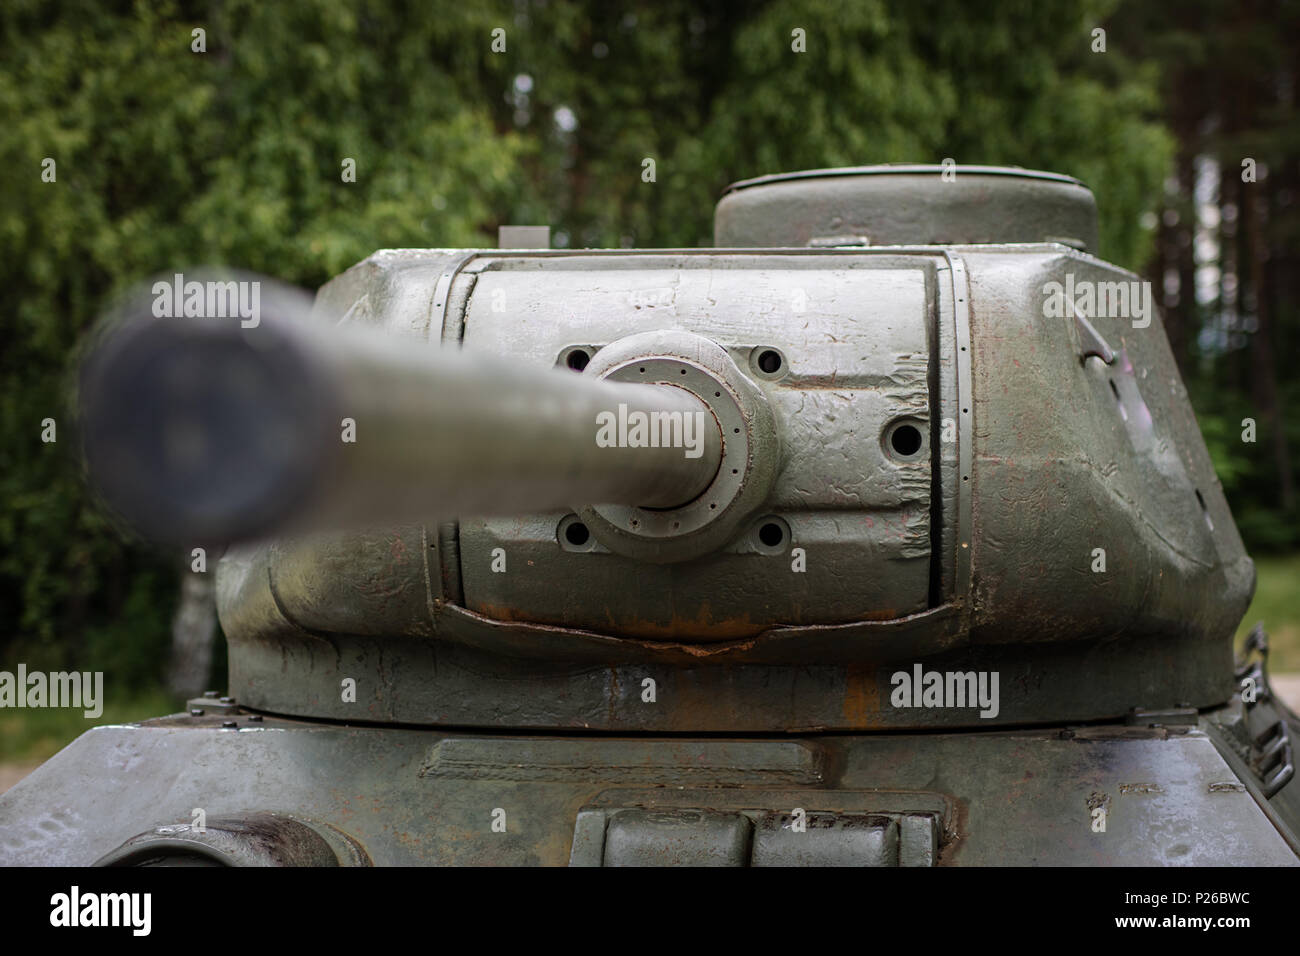 Alte russische Panzer in ein Freilichtmuseum. Bewaffnete Streitkräfte in alten Gedenkstätten. Saison der Feder. Stockfoto